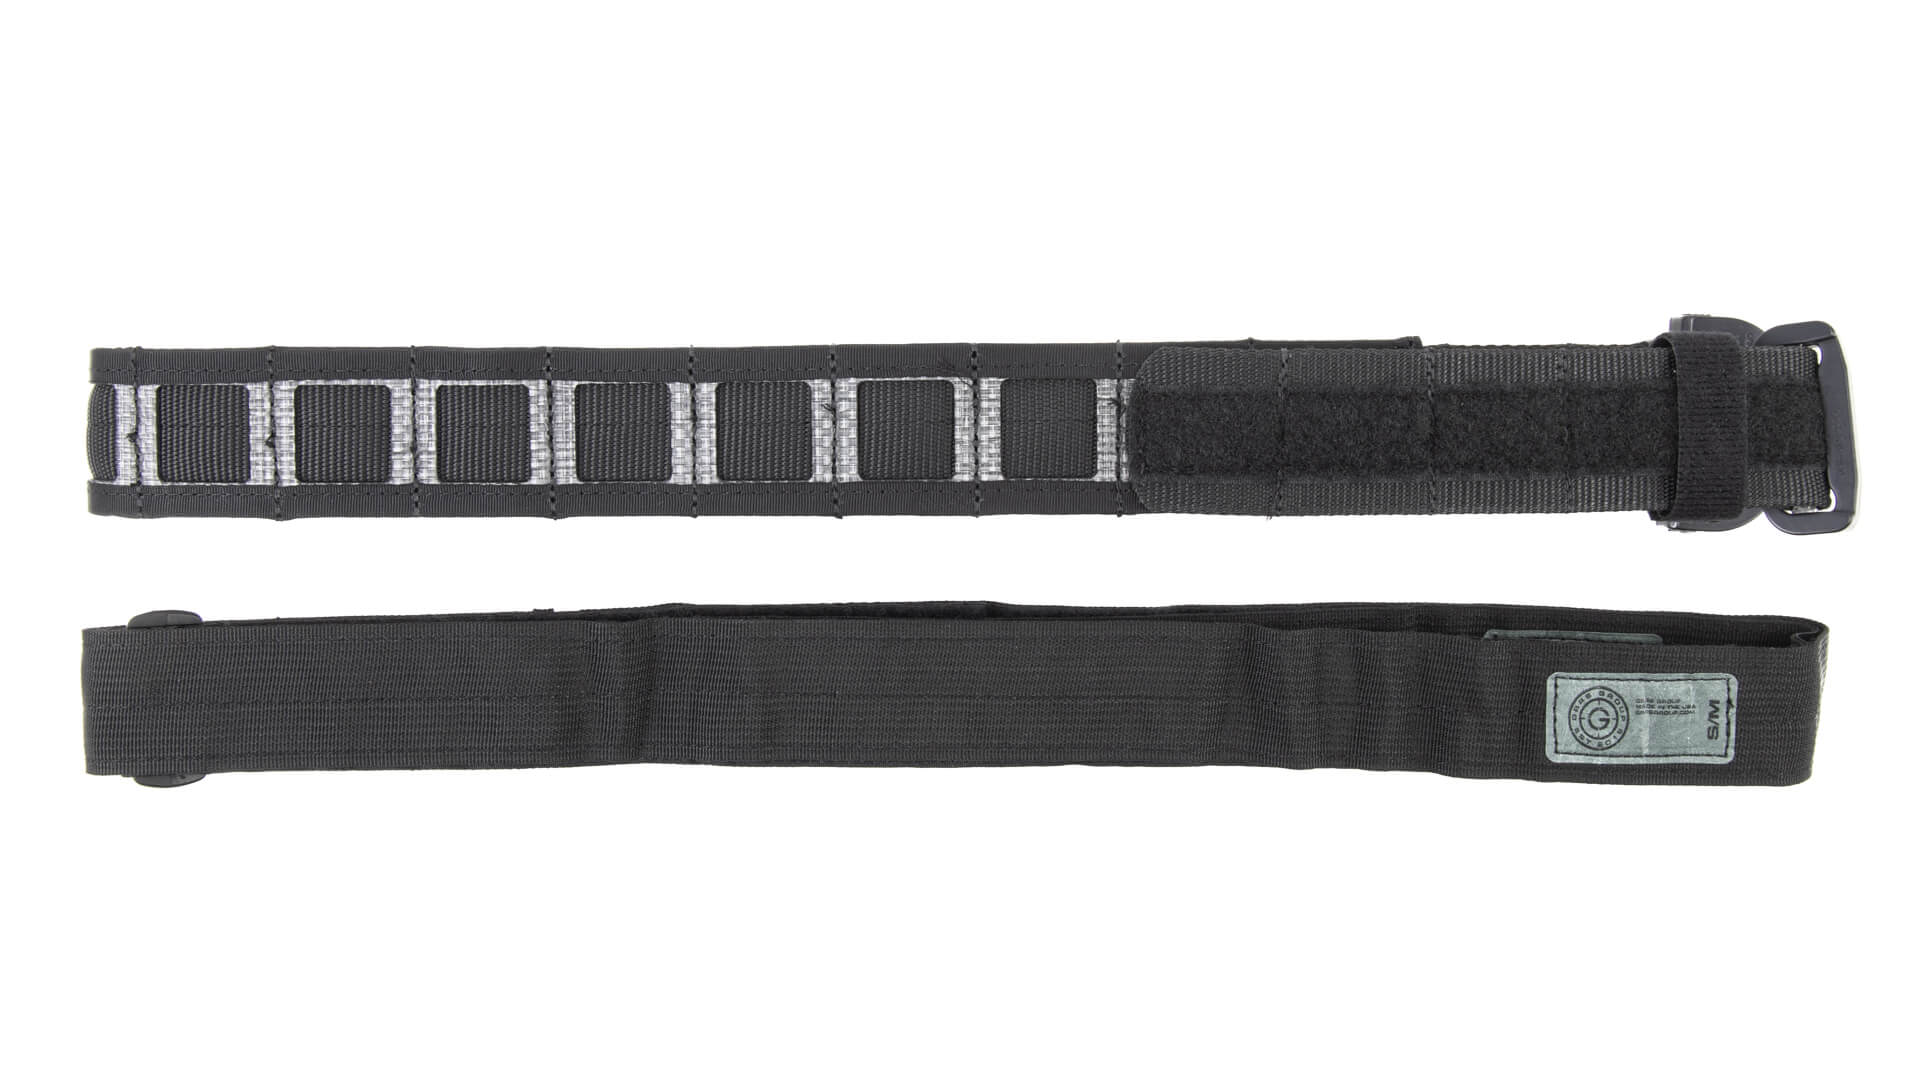 GBRS Group Assaulter Belt System V2 - Black